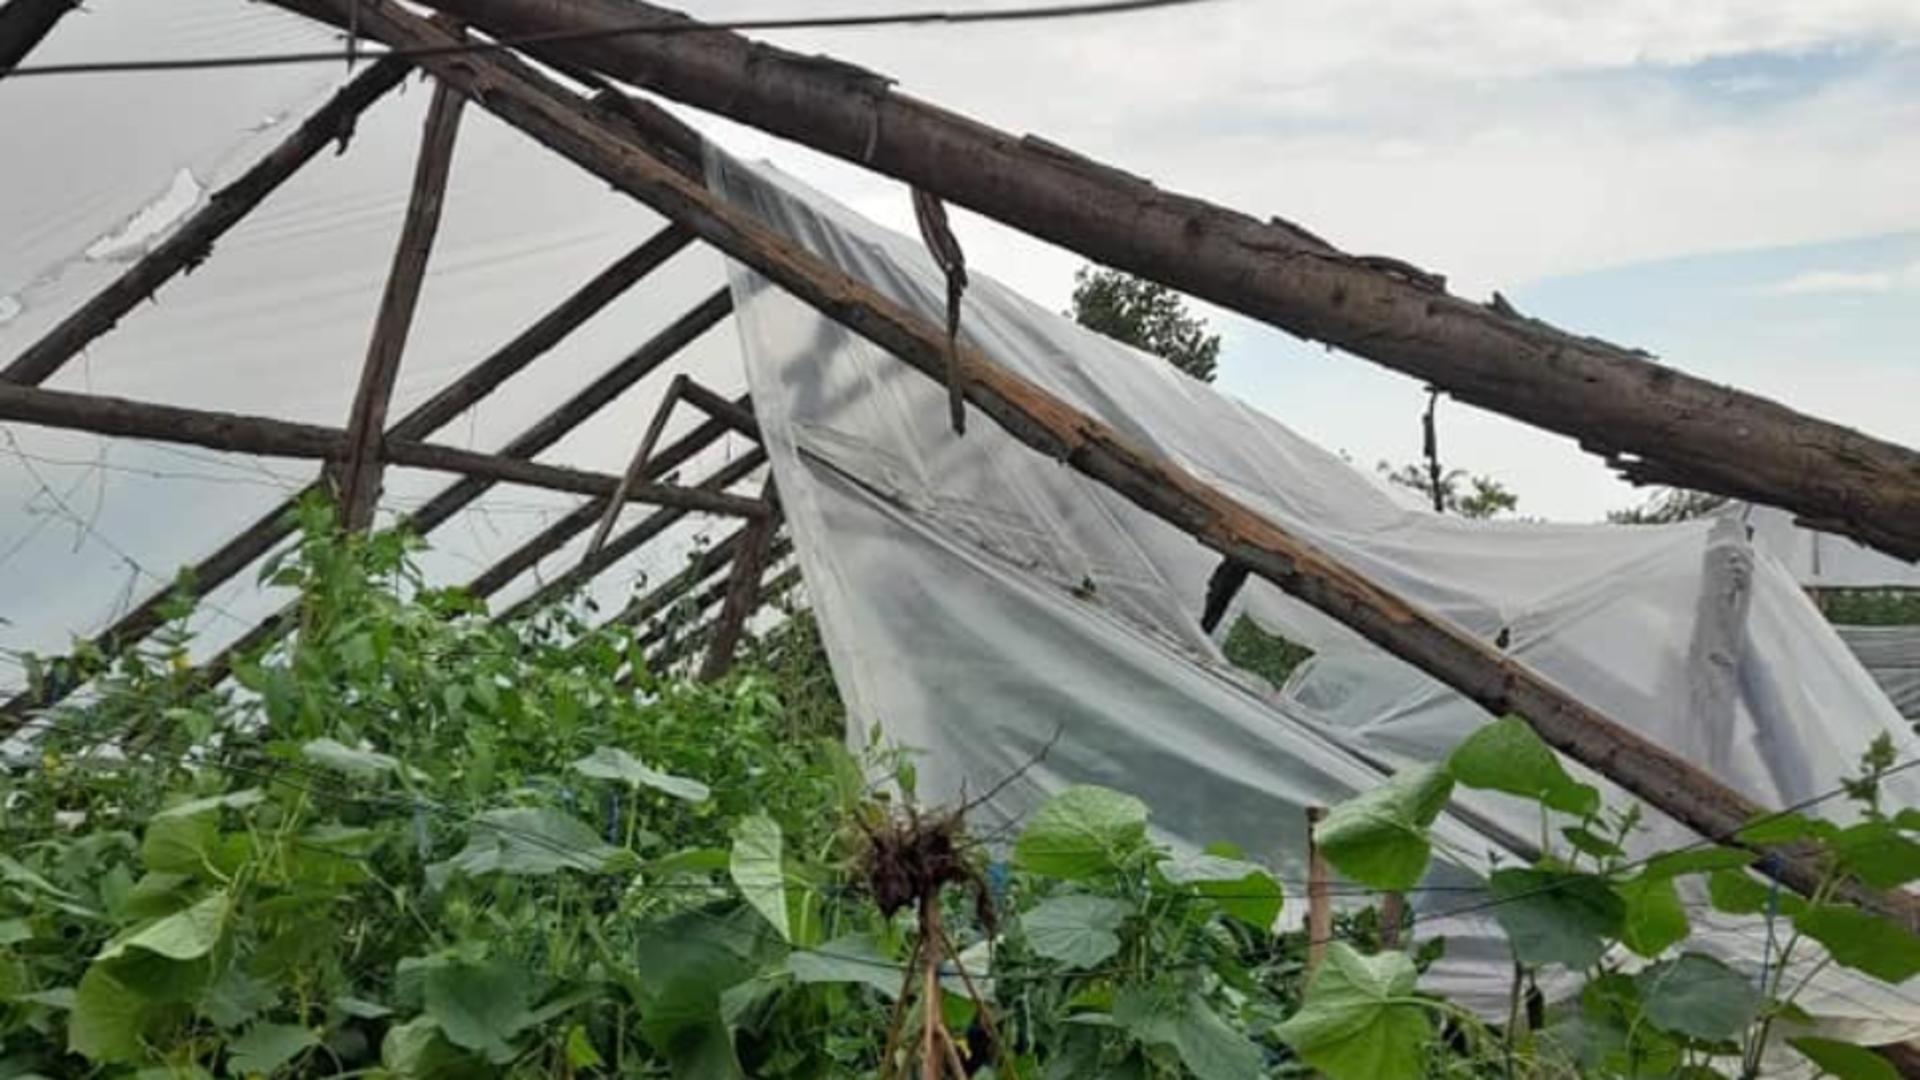 Zeci de solarii, distruse de furtună. Fermierii sunt disperați - FOTO&VIDEO